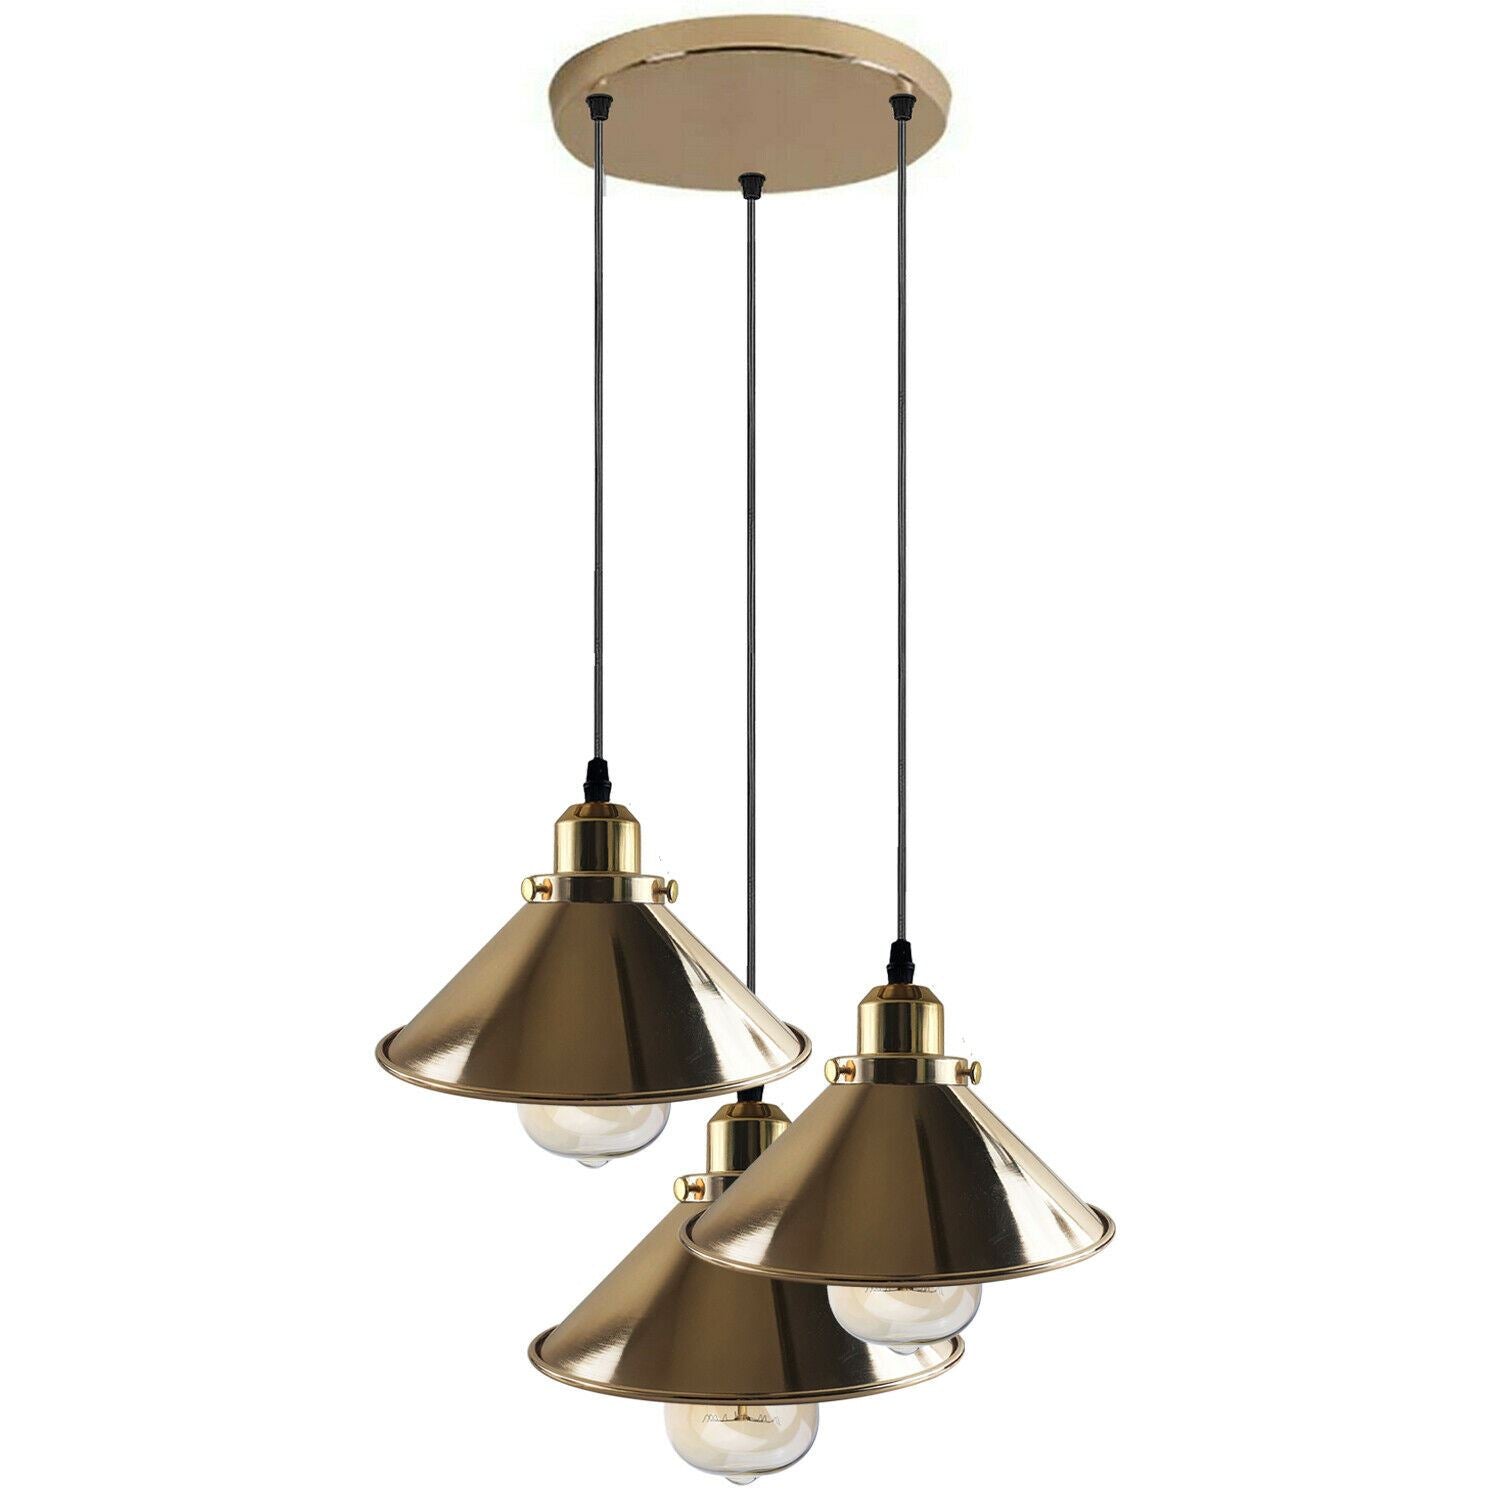 Modern Industrial French Gold Hanging Ceiling Pendant Light Metal Cone Shape Indoor Lighting For Bed Room, Kitchen, Living Room~1171 - LEDSone UK Ltd